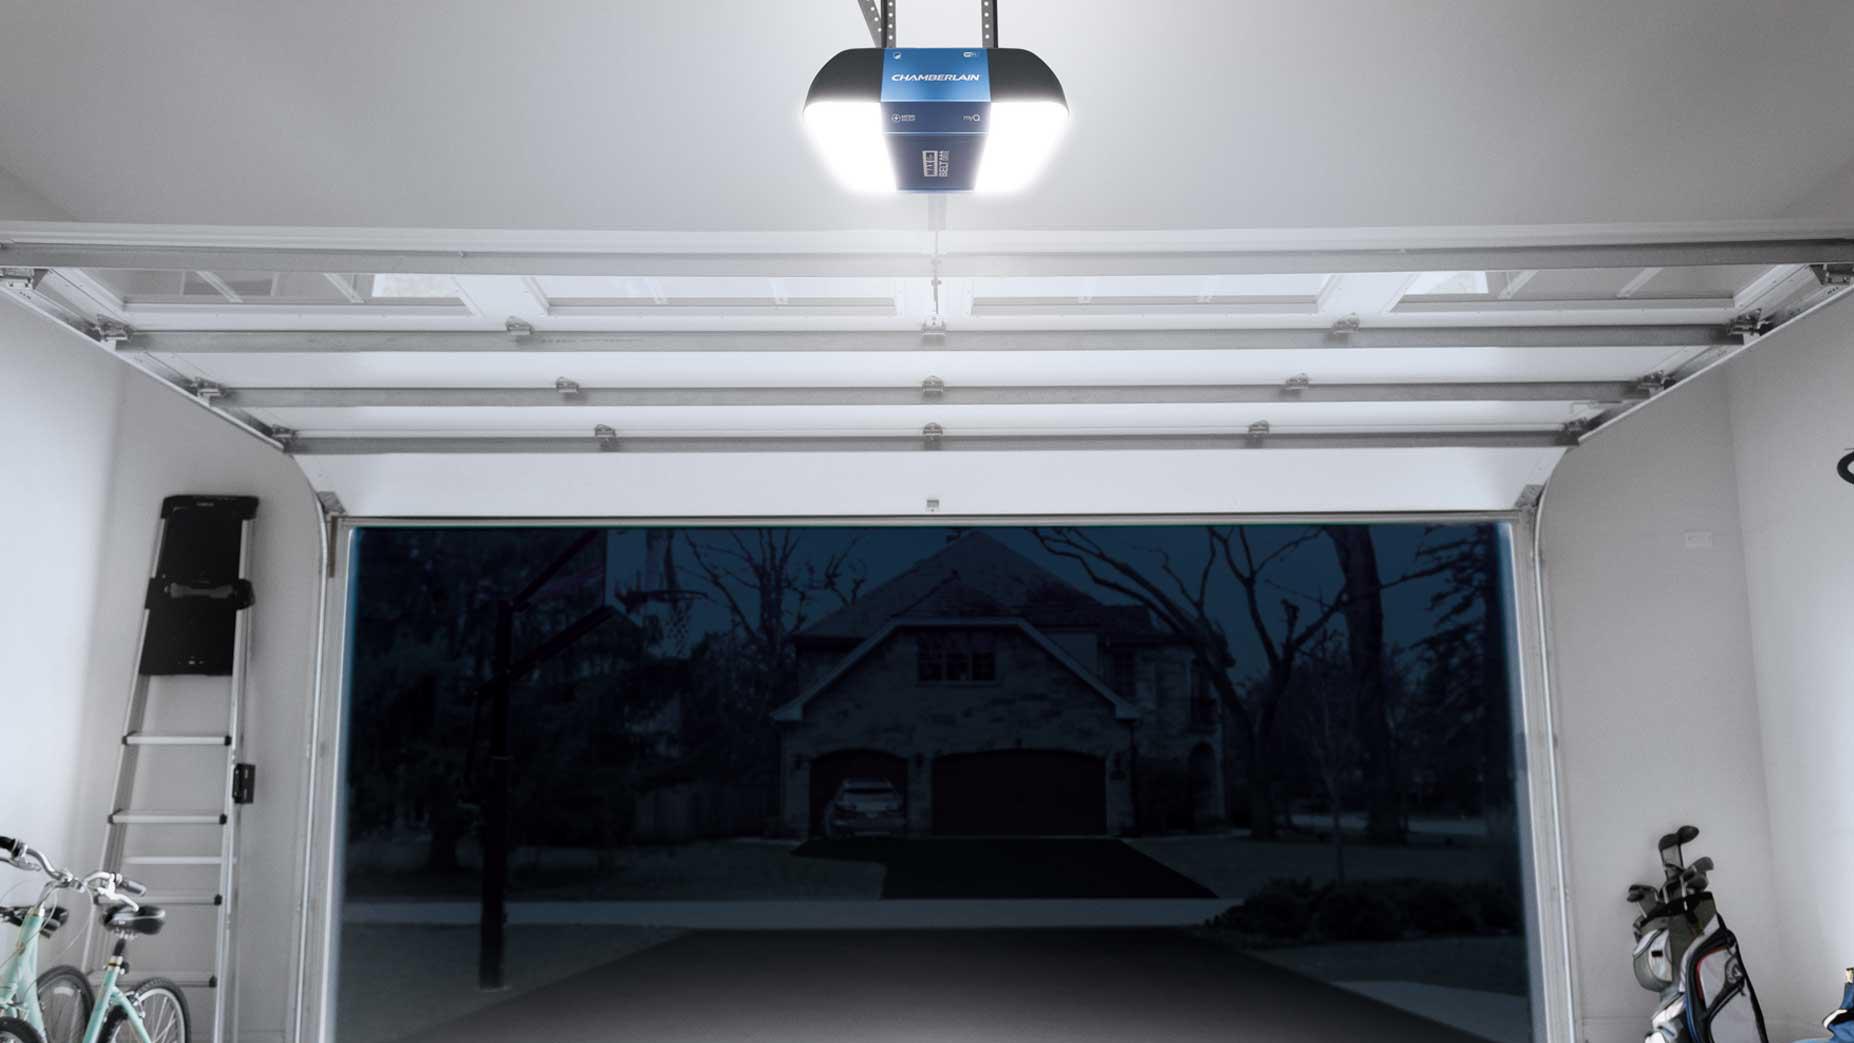 Best Hot Garage Door Openers 2022, How To Install Led Light Fixture In Garage Door